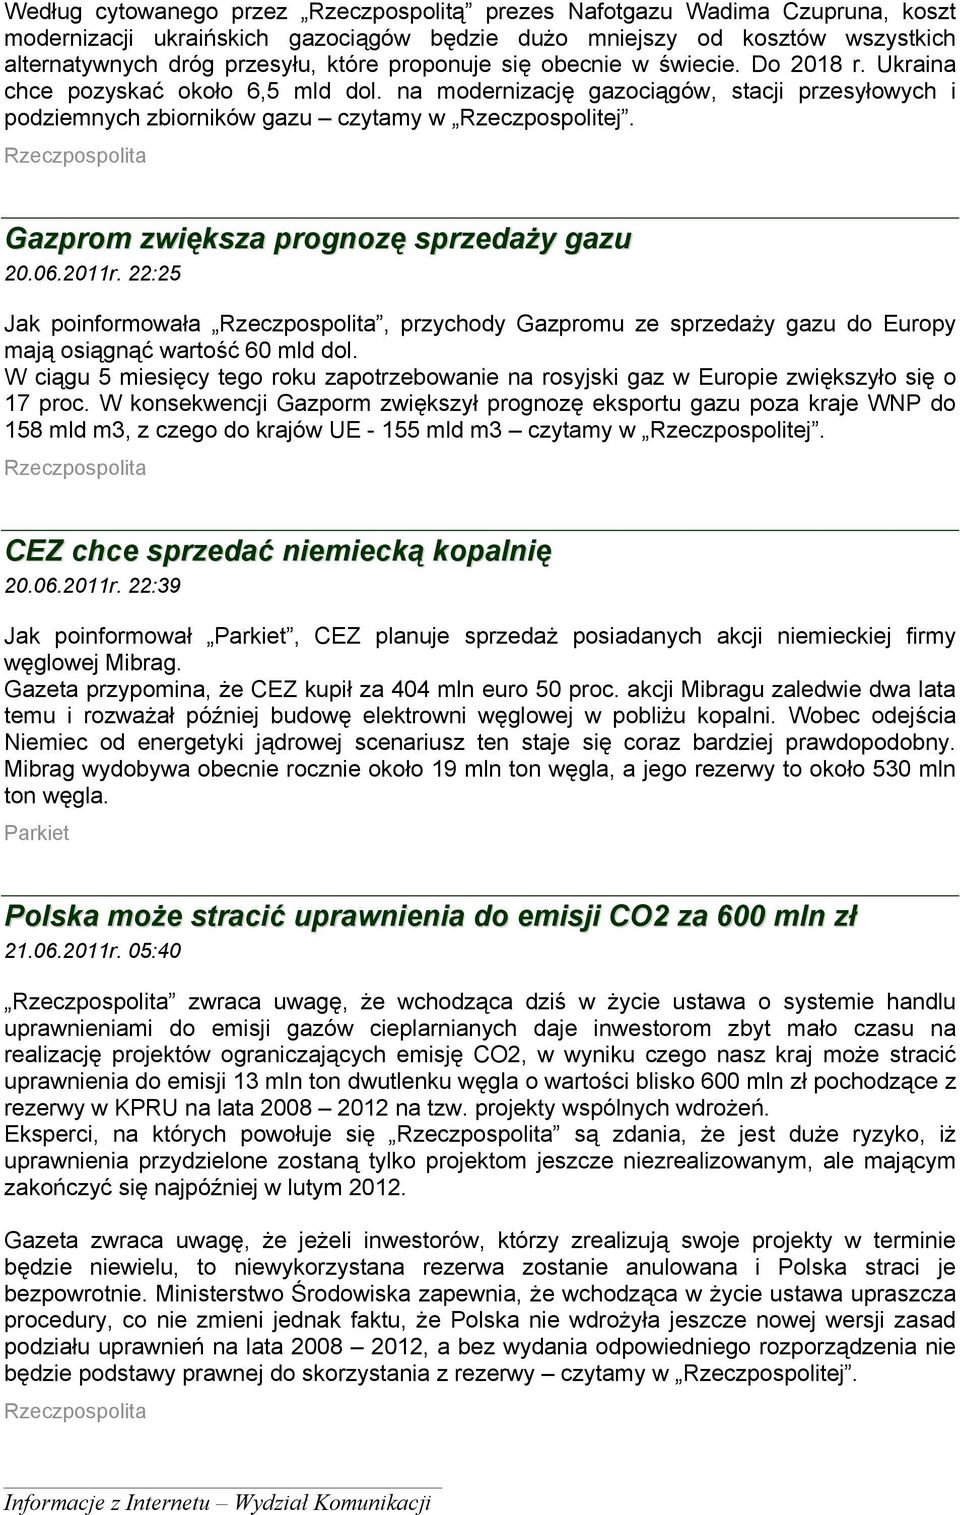 Rzeczpospolita Gazprom zwiększa prognozę sprzedaży gazu 20.06.2011r. 22:25 Jak poinformowała Rzeczpospolita, przychody Gazpromu ze sprzedaży gazu do Europy mają osiągnąć wartość 60 mld dol.